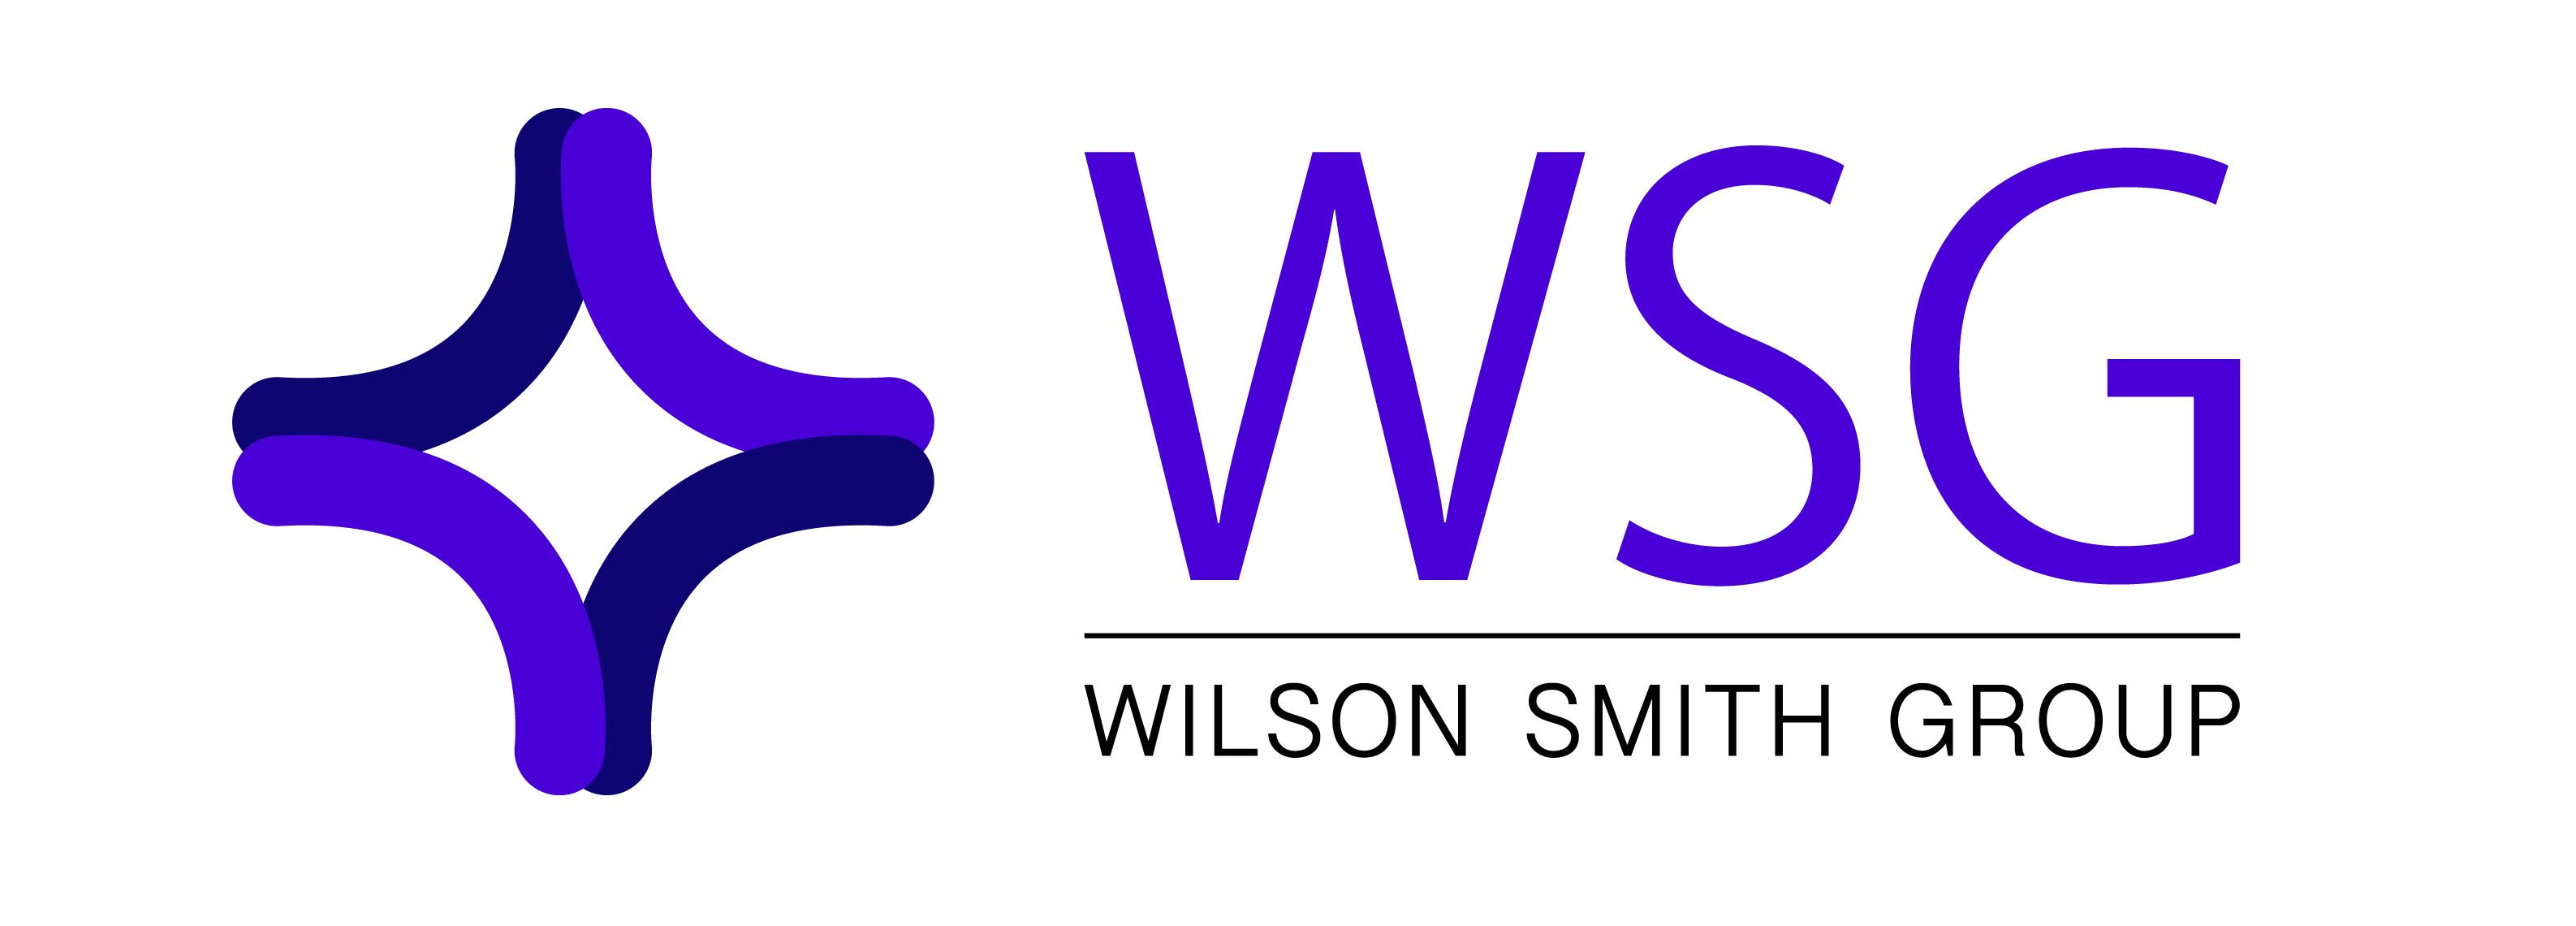 wilson smith group logo